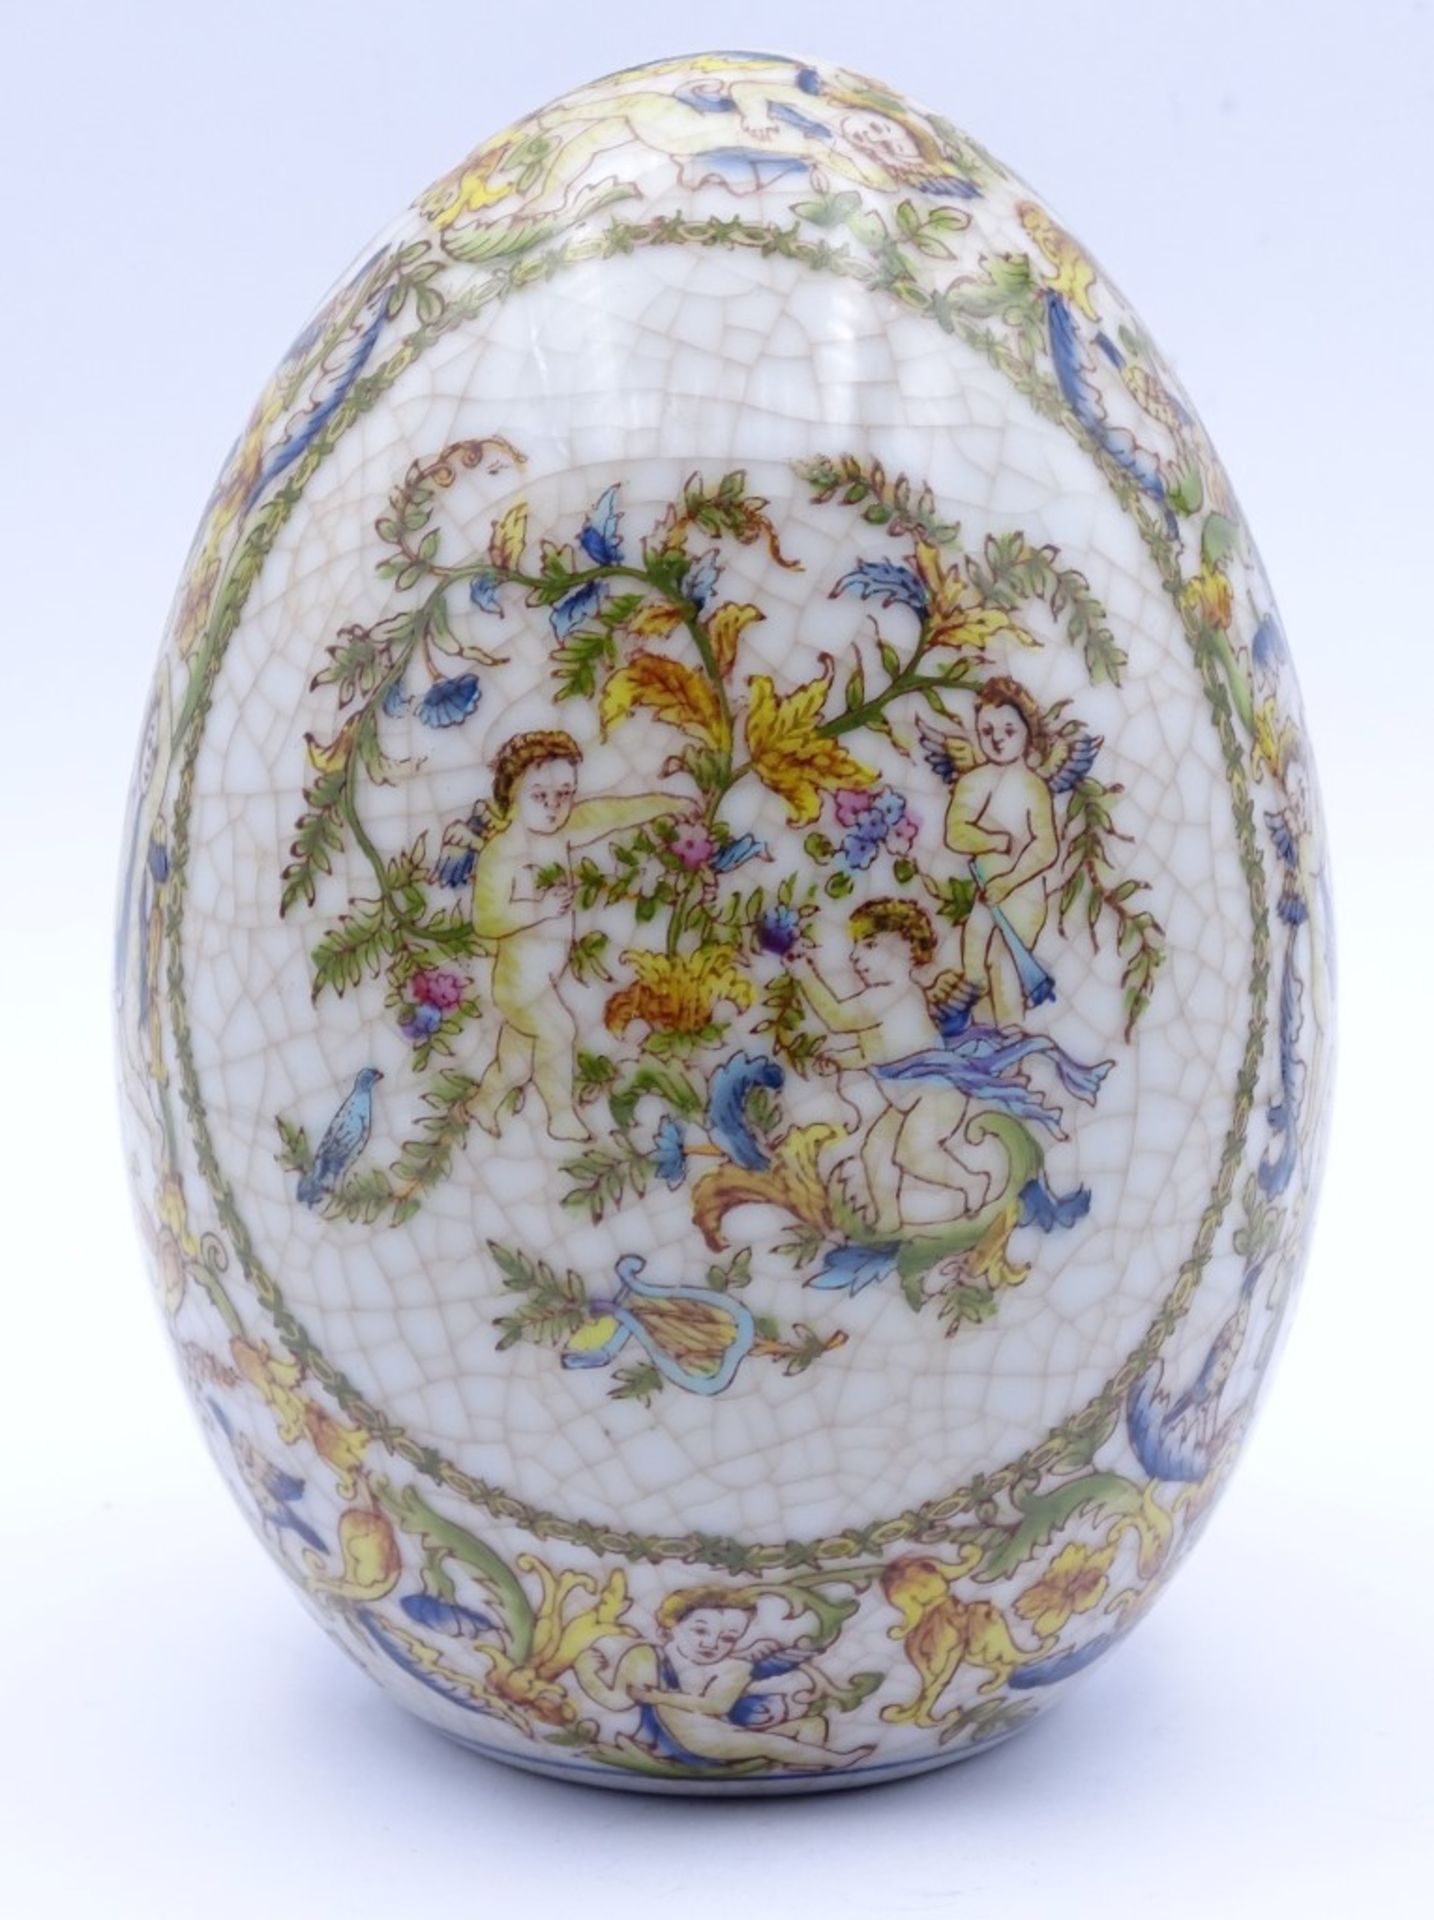 Tisch Dekorations Ei mit Putti Darstellungen,krakeliert,H-13,5cm